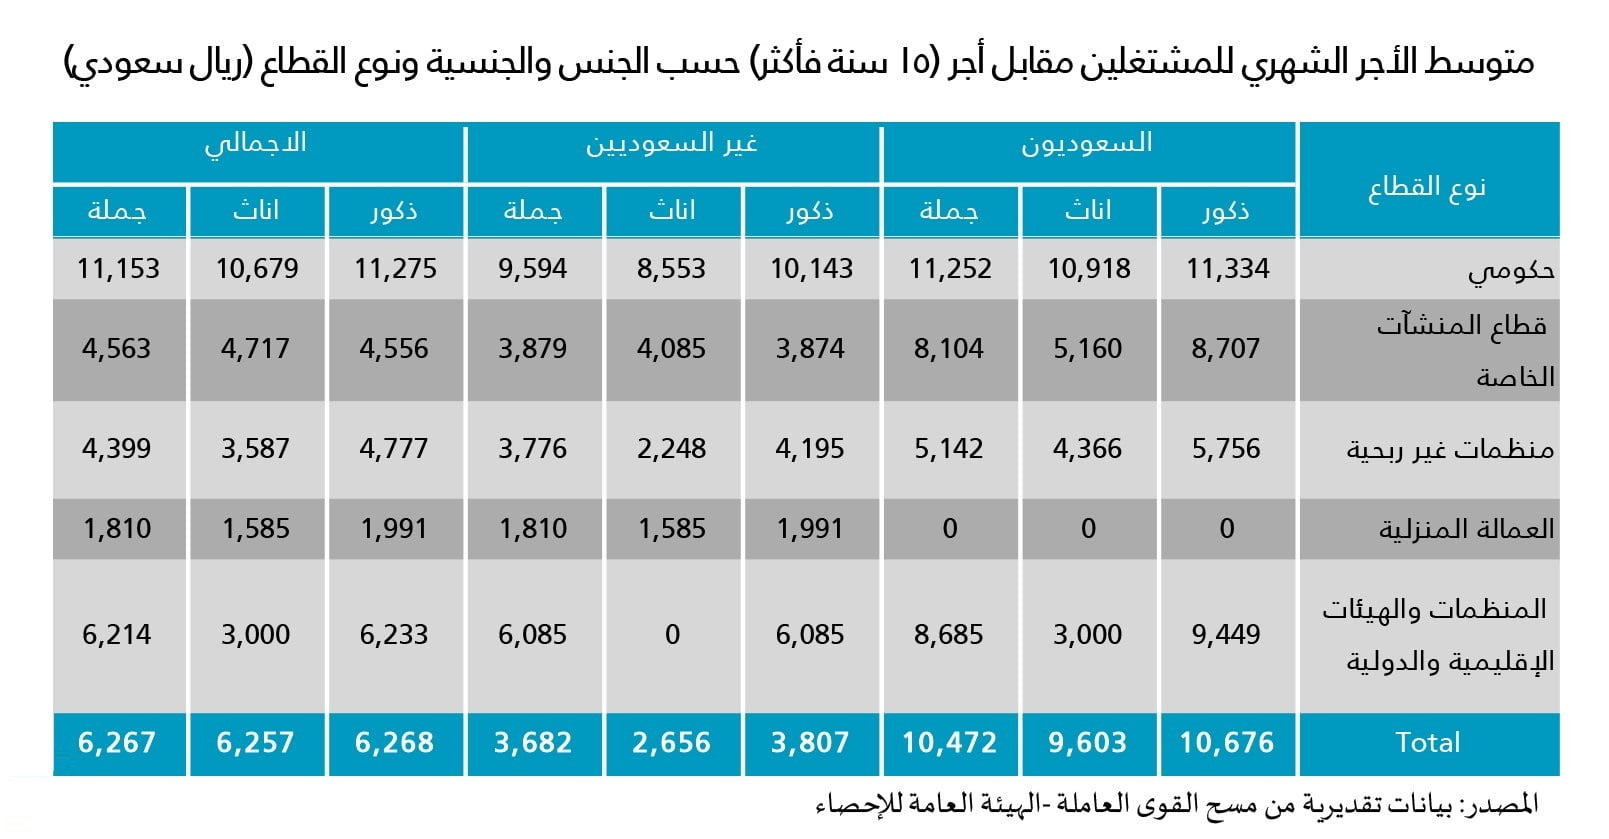 هيئة الإحصاء متوسط الرواتب الشهرية للسعوديين 10472 ريالا والأجانب 3682 ريالا في الربع الثالث صحيفة المناطق السعوديةصحيفة المناطق السعودية